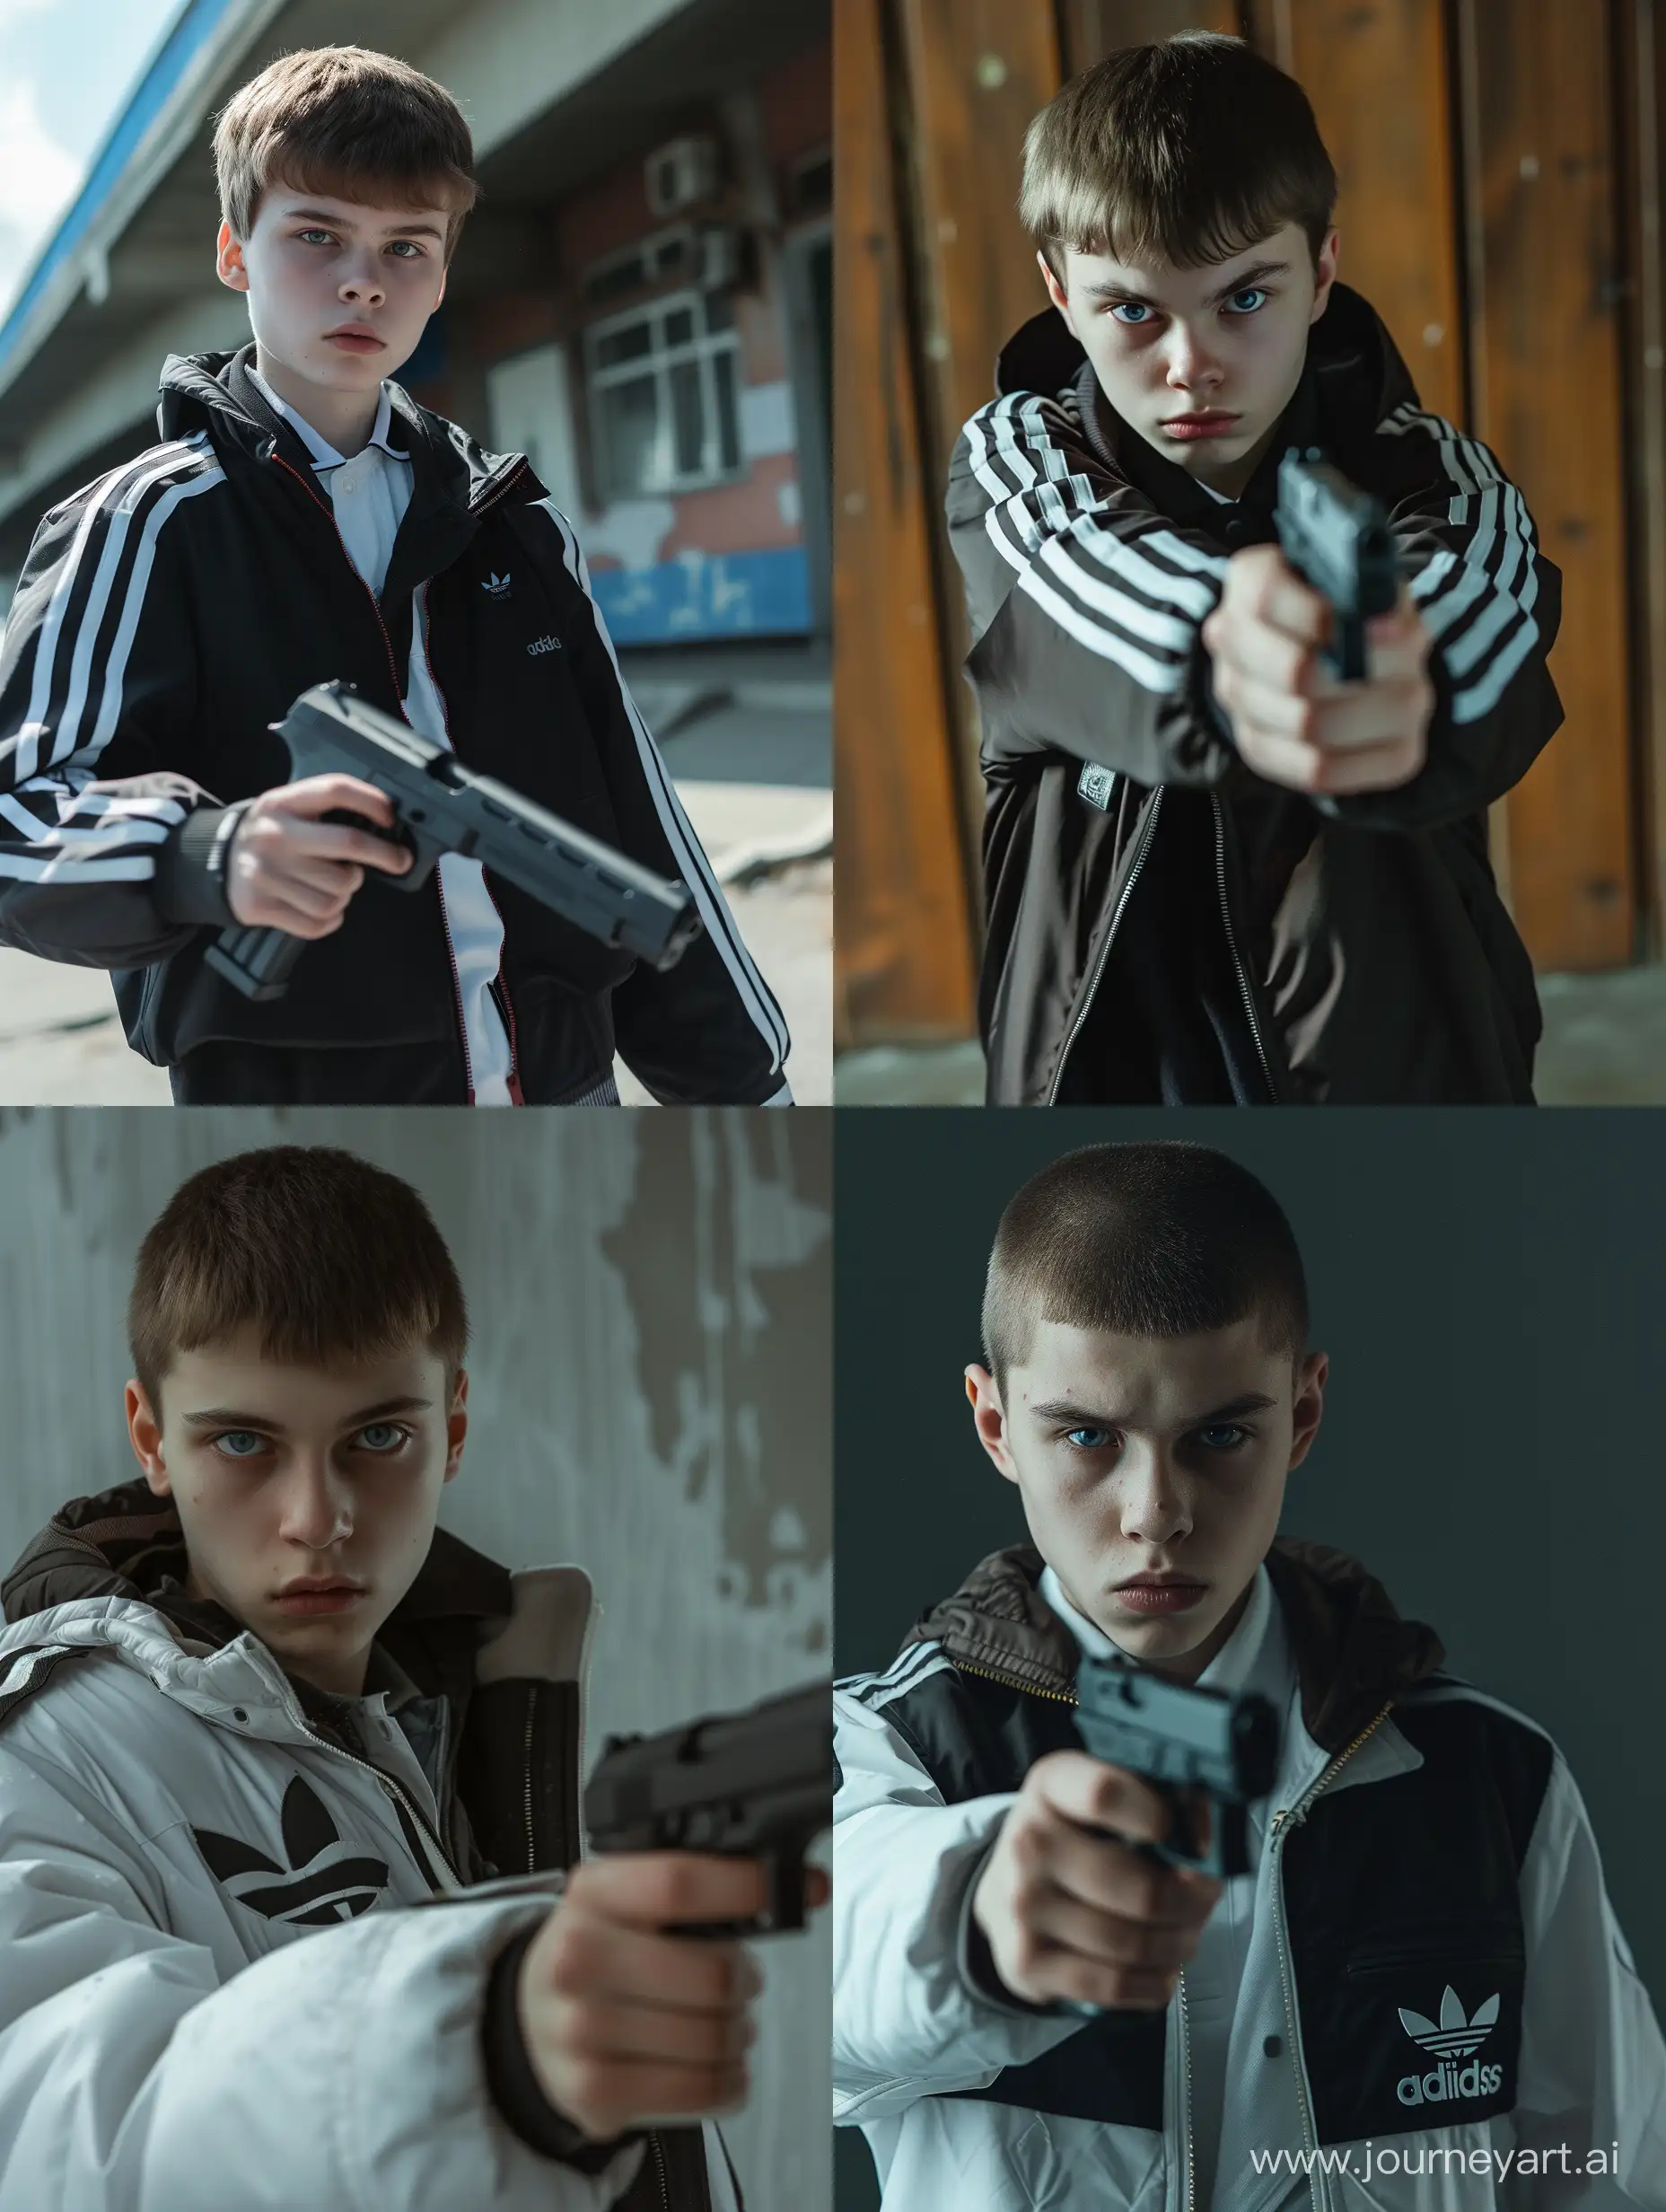 русский парень подросток, в школьной форме и ветровке адидас, с короткой стрижкой, волосы коричневого цвета, голубые глаза, в руках оружие